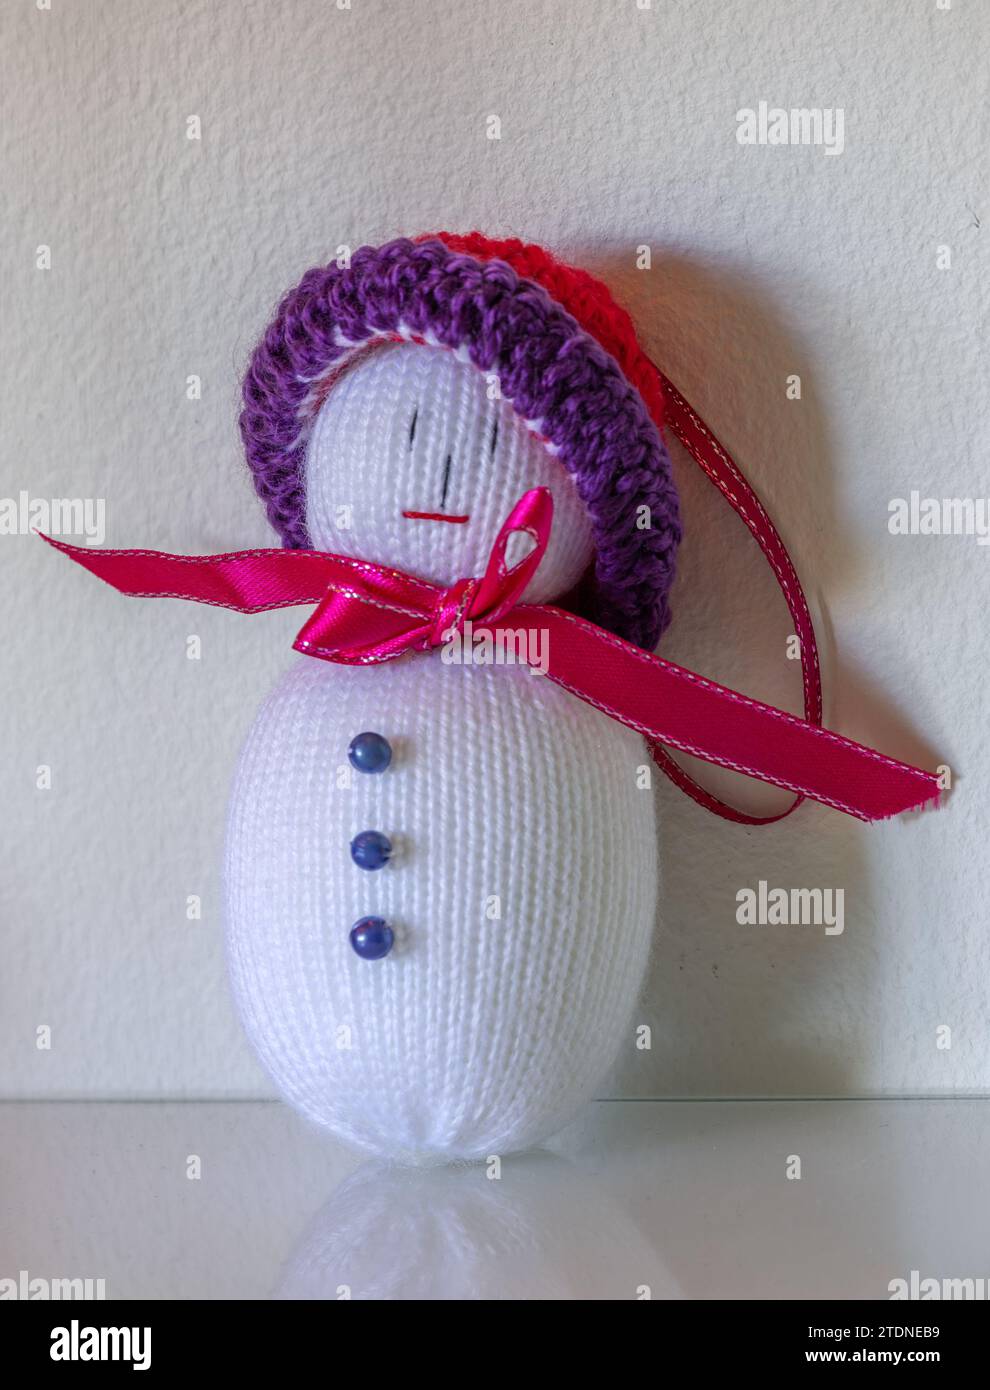 Primer plano de una muñeca de Navidad, hecha a mano en crochet, con botones, cinta y sombrero, de pie sobre una superficie de vidrio contra una pared blanca. Foto de stock